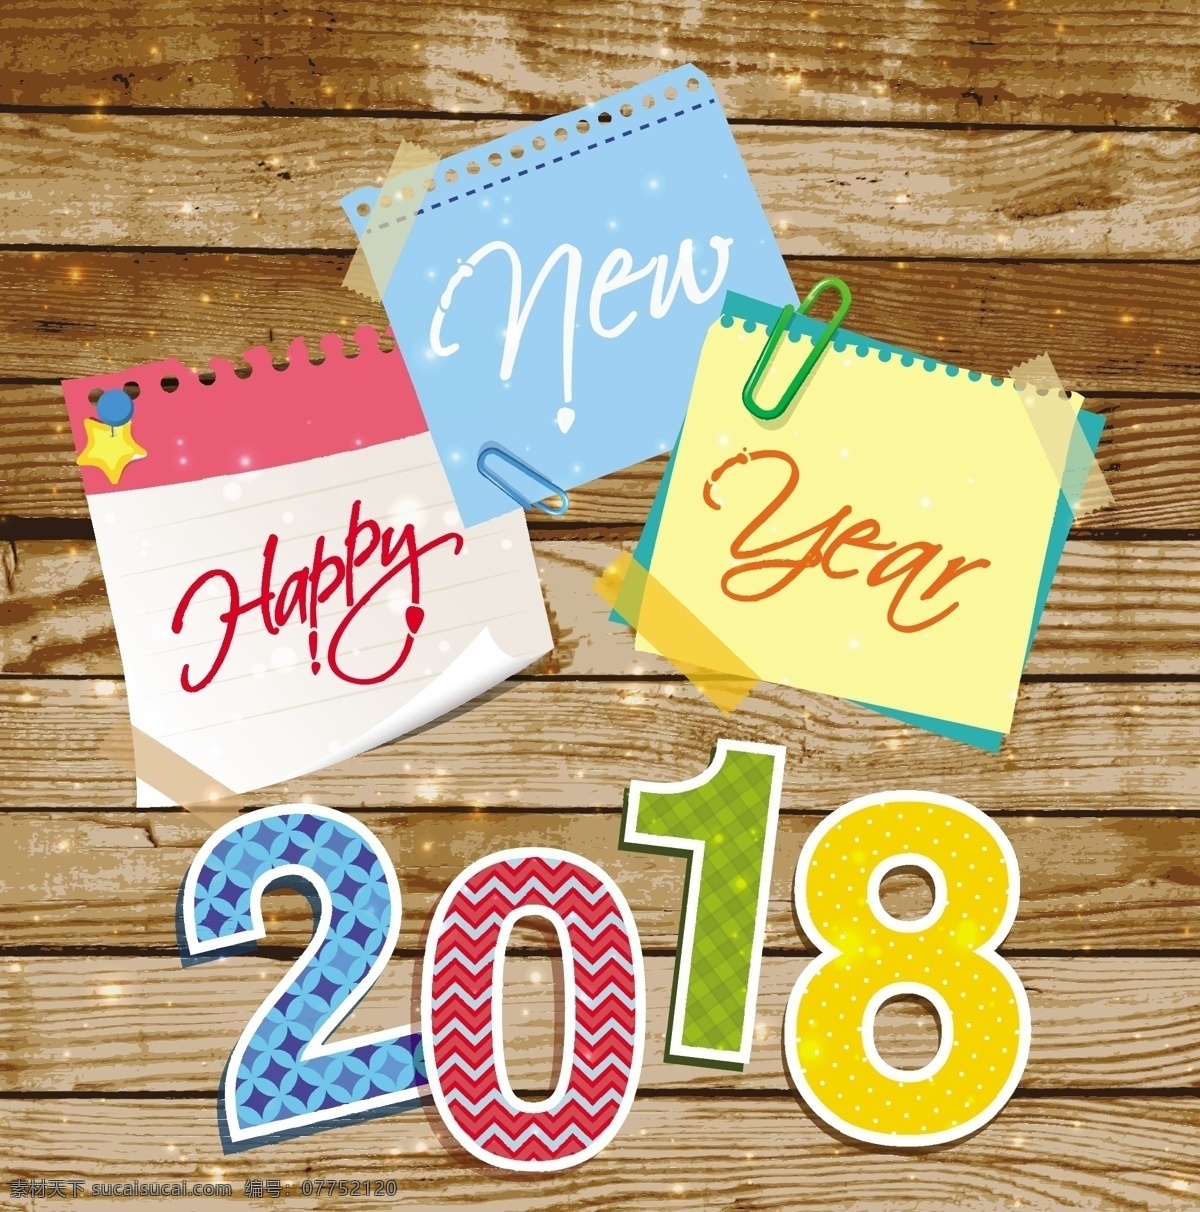 2018 新年 快乐 矢量 新年快乐 便签纸 木板 矢量素材